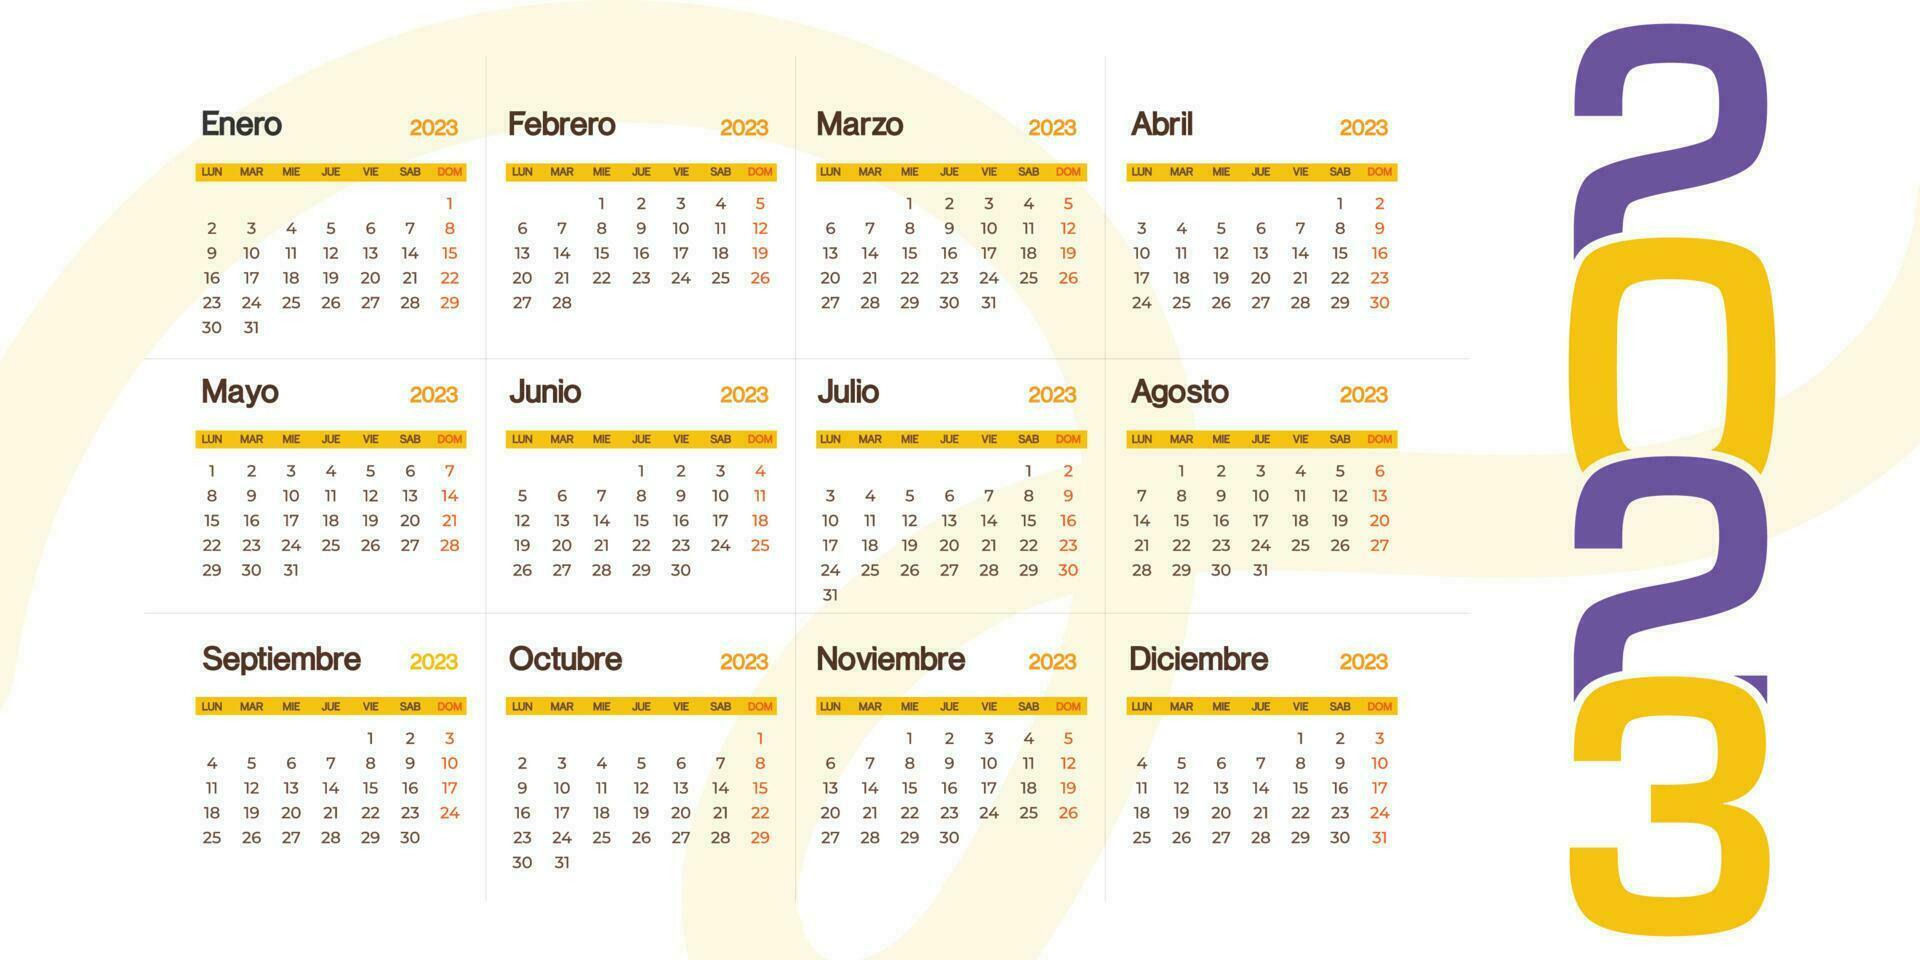 Espagnol 2023 calendrier minimaliste regarder, la semaine début de dimanche classique vecteur